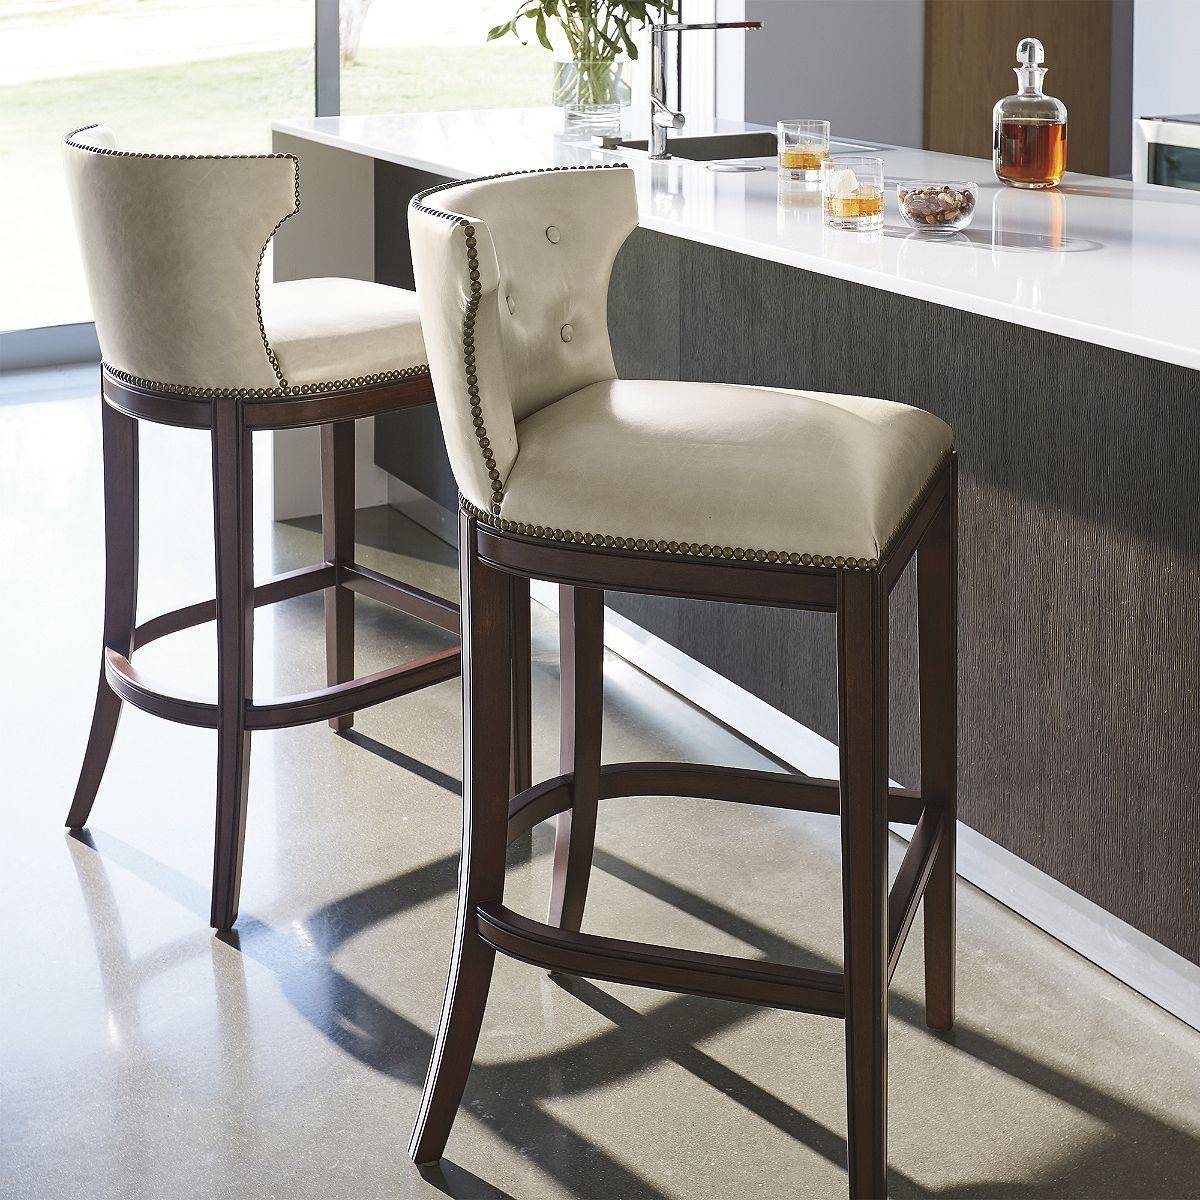 Шесть типов высоких кухонных стульев и самые стильные варианты